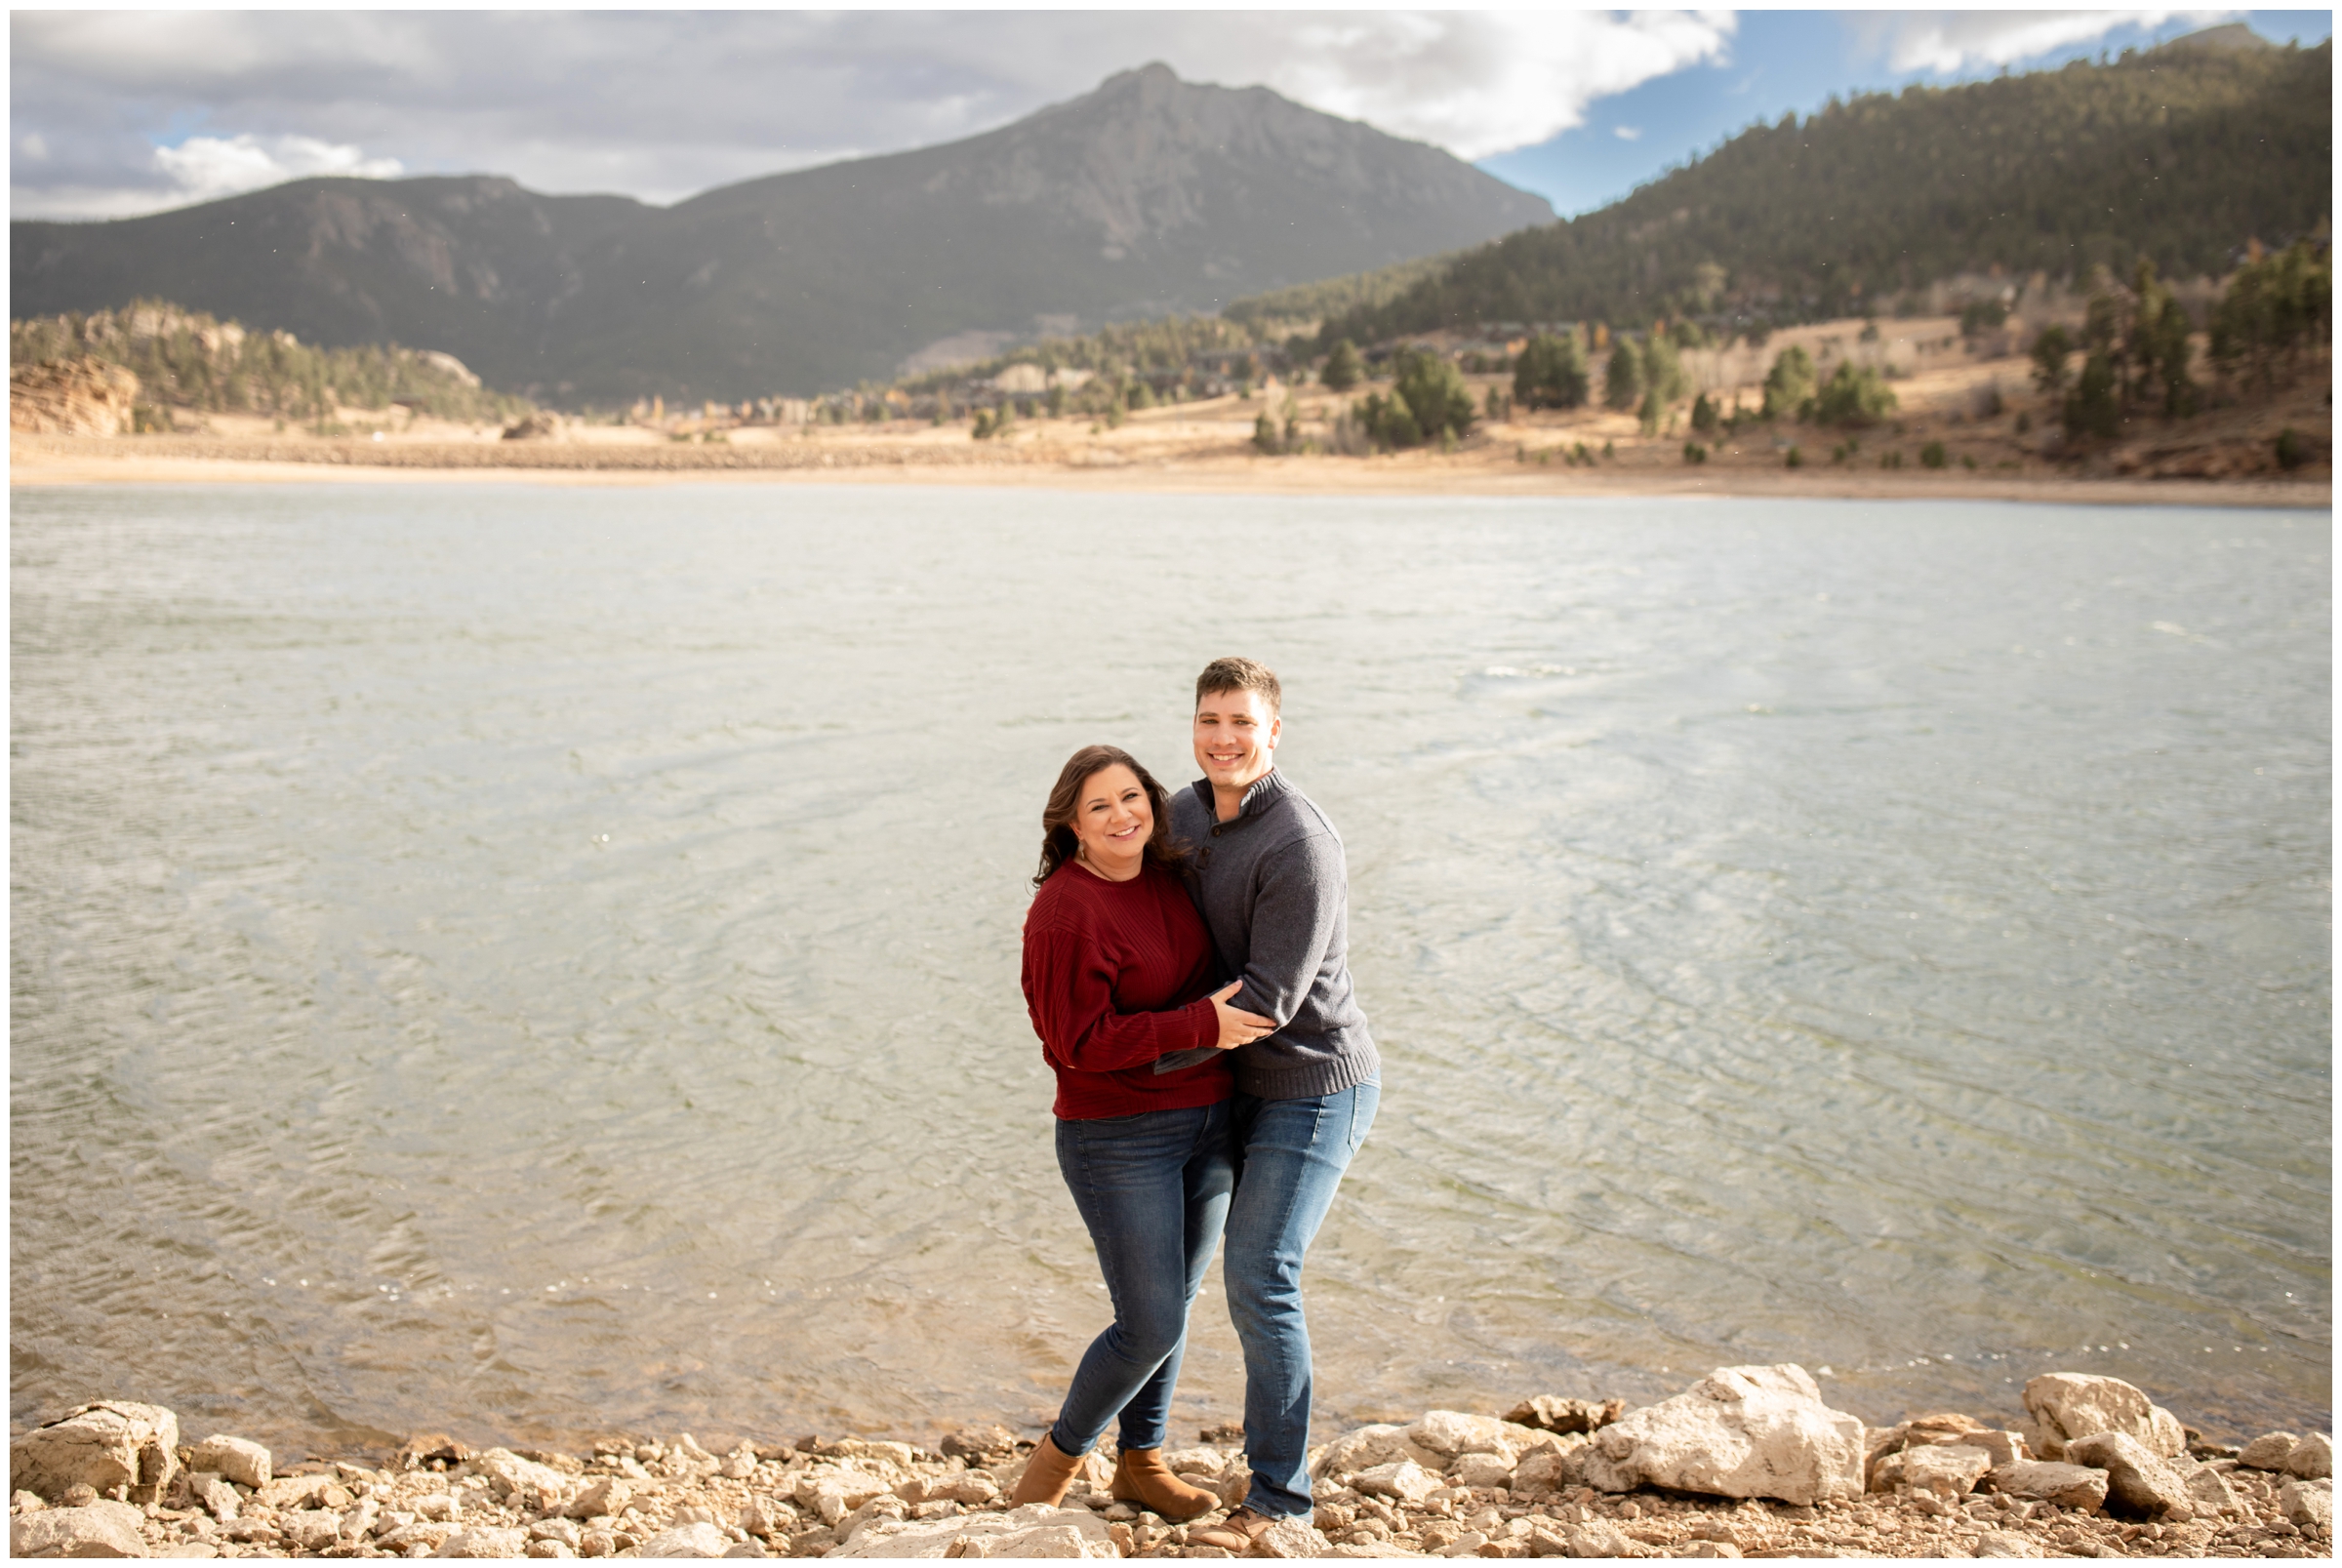 mountain lake couple's photography session in Estes Park Colorado 